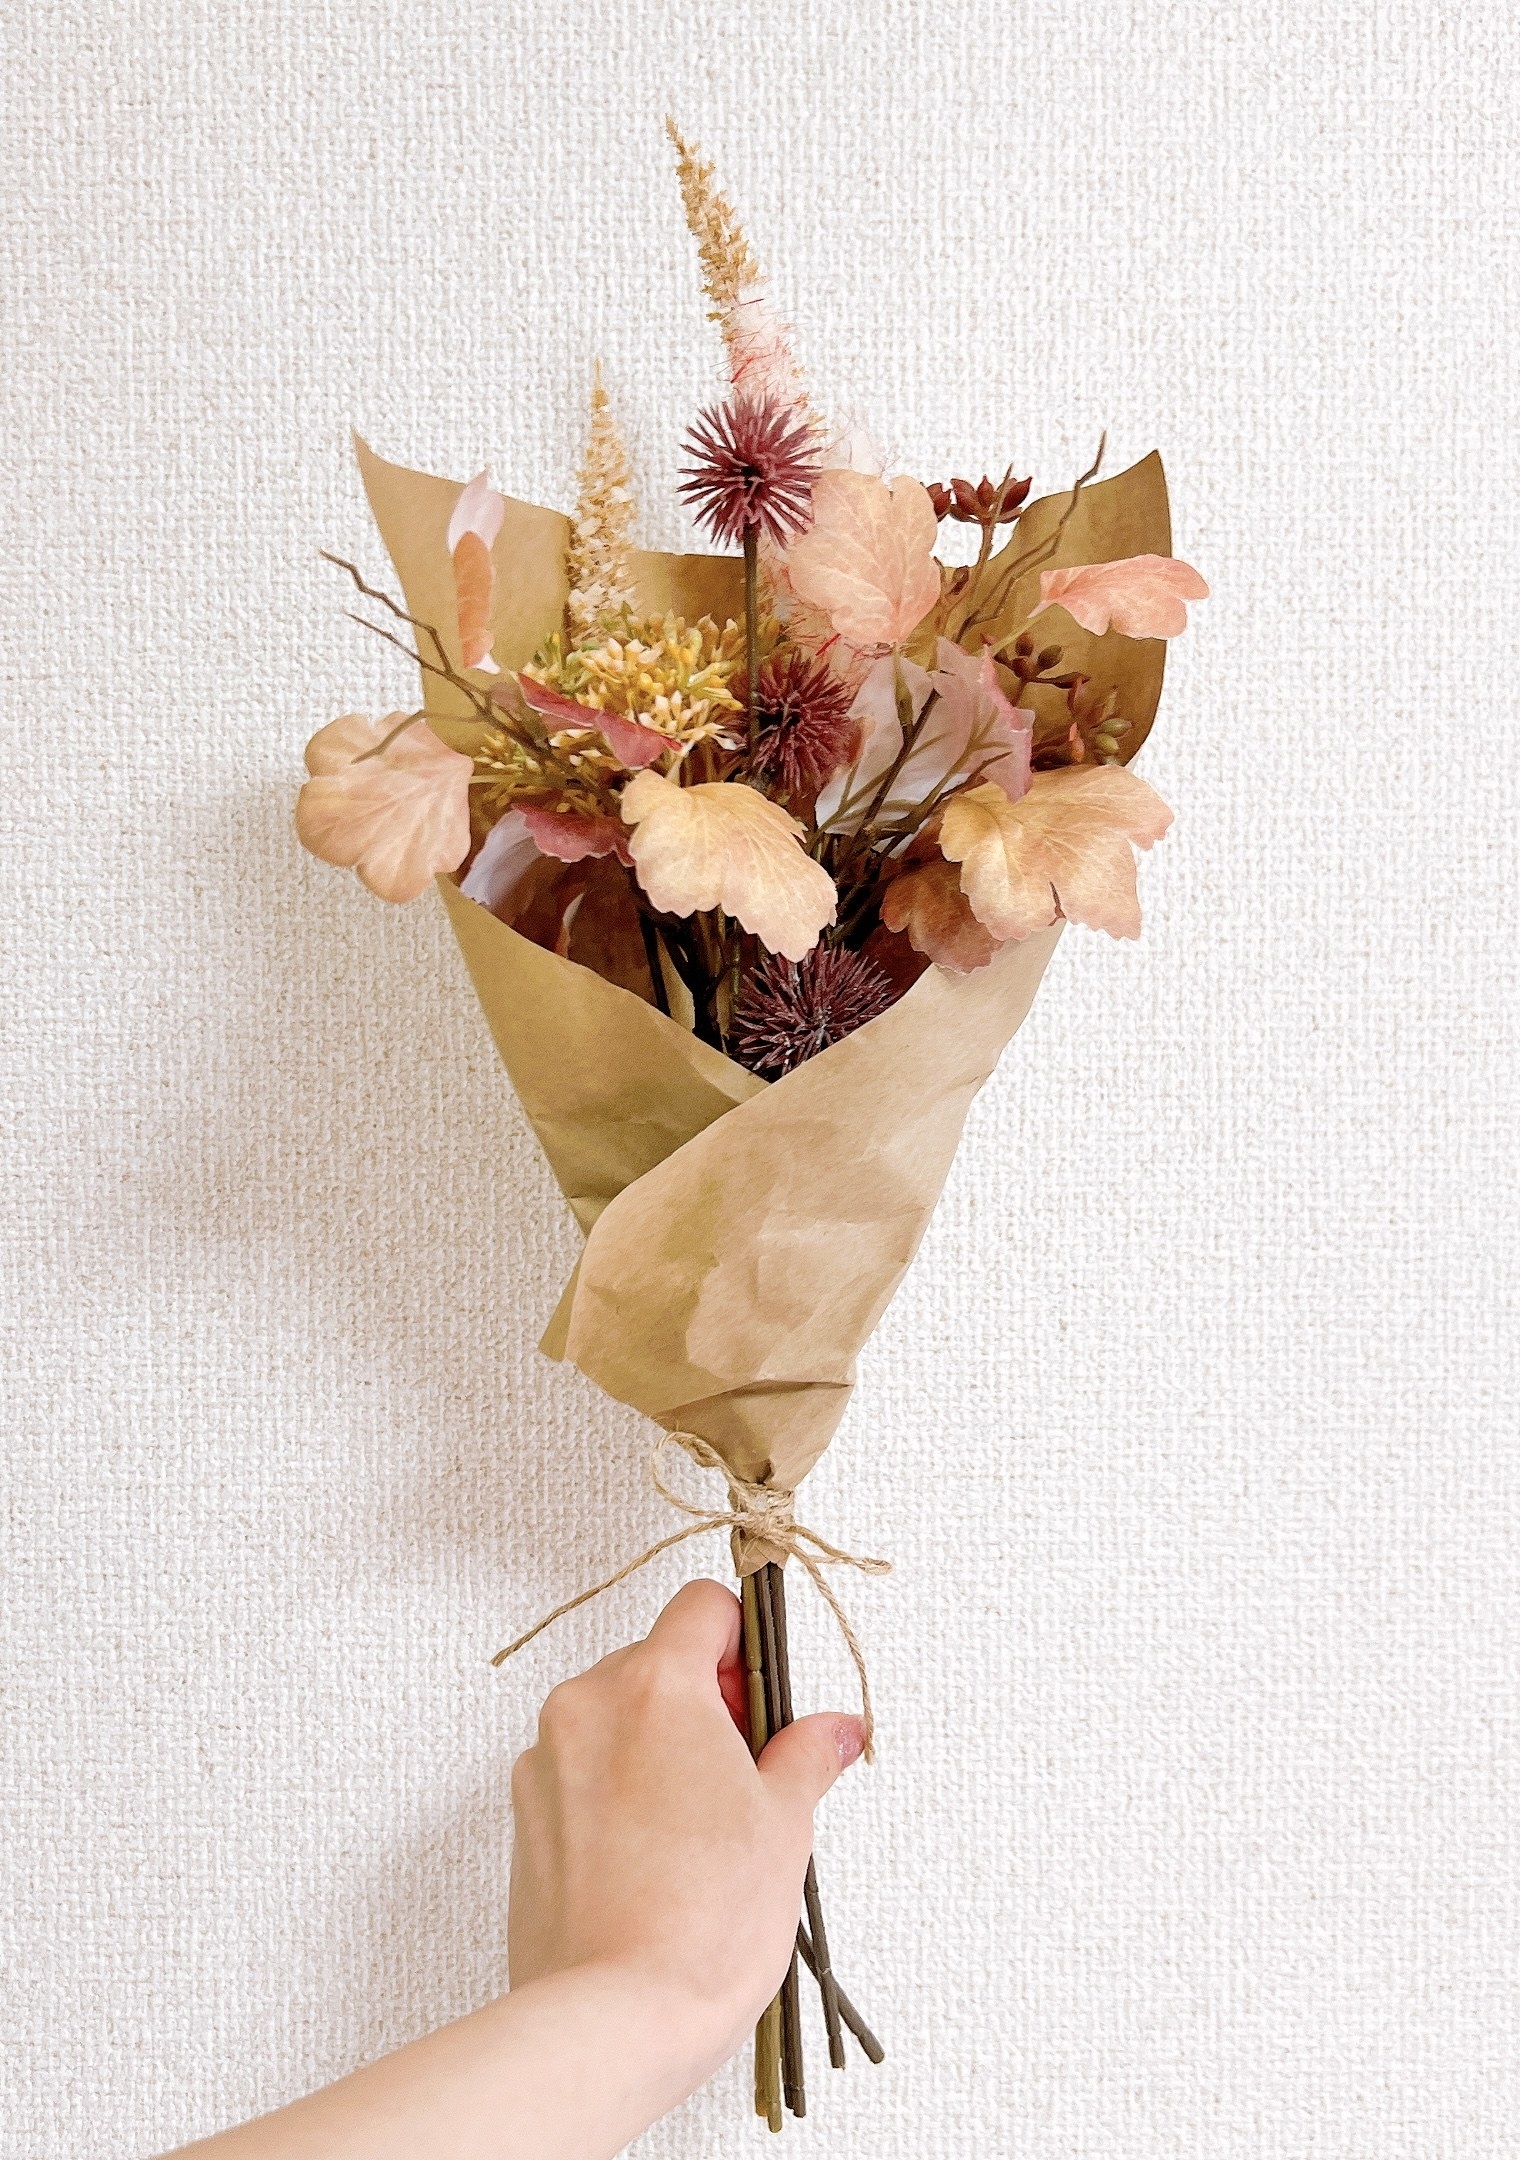 IKEA（イケア）のおすすめインテリア「SMYCKA スミッカ 造花のブーケ,ペールピンク/ベージュ,48cm」